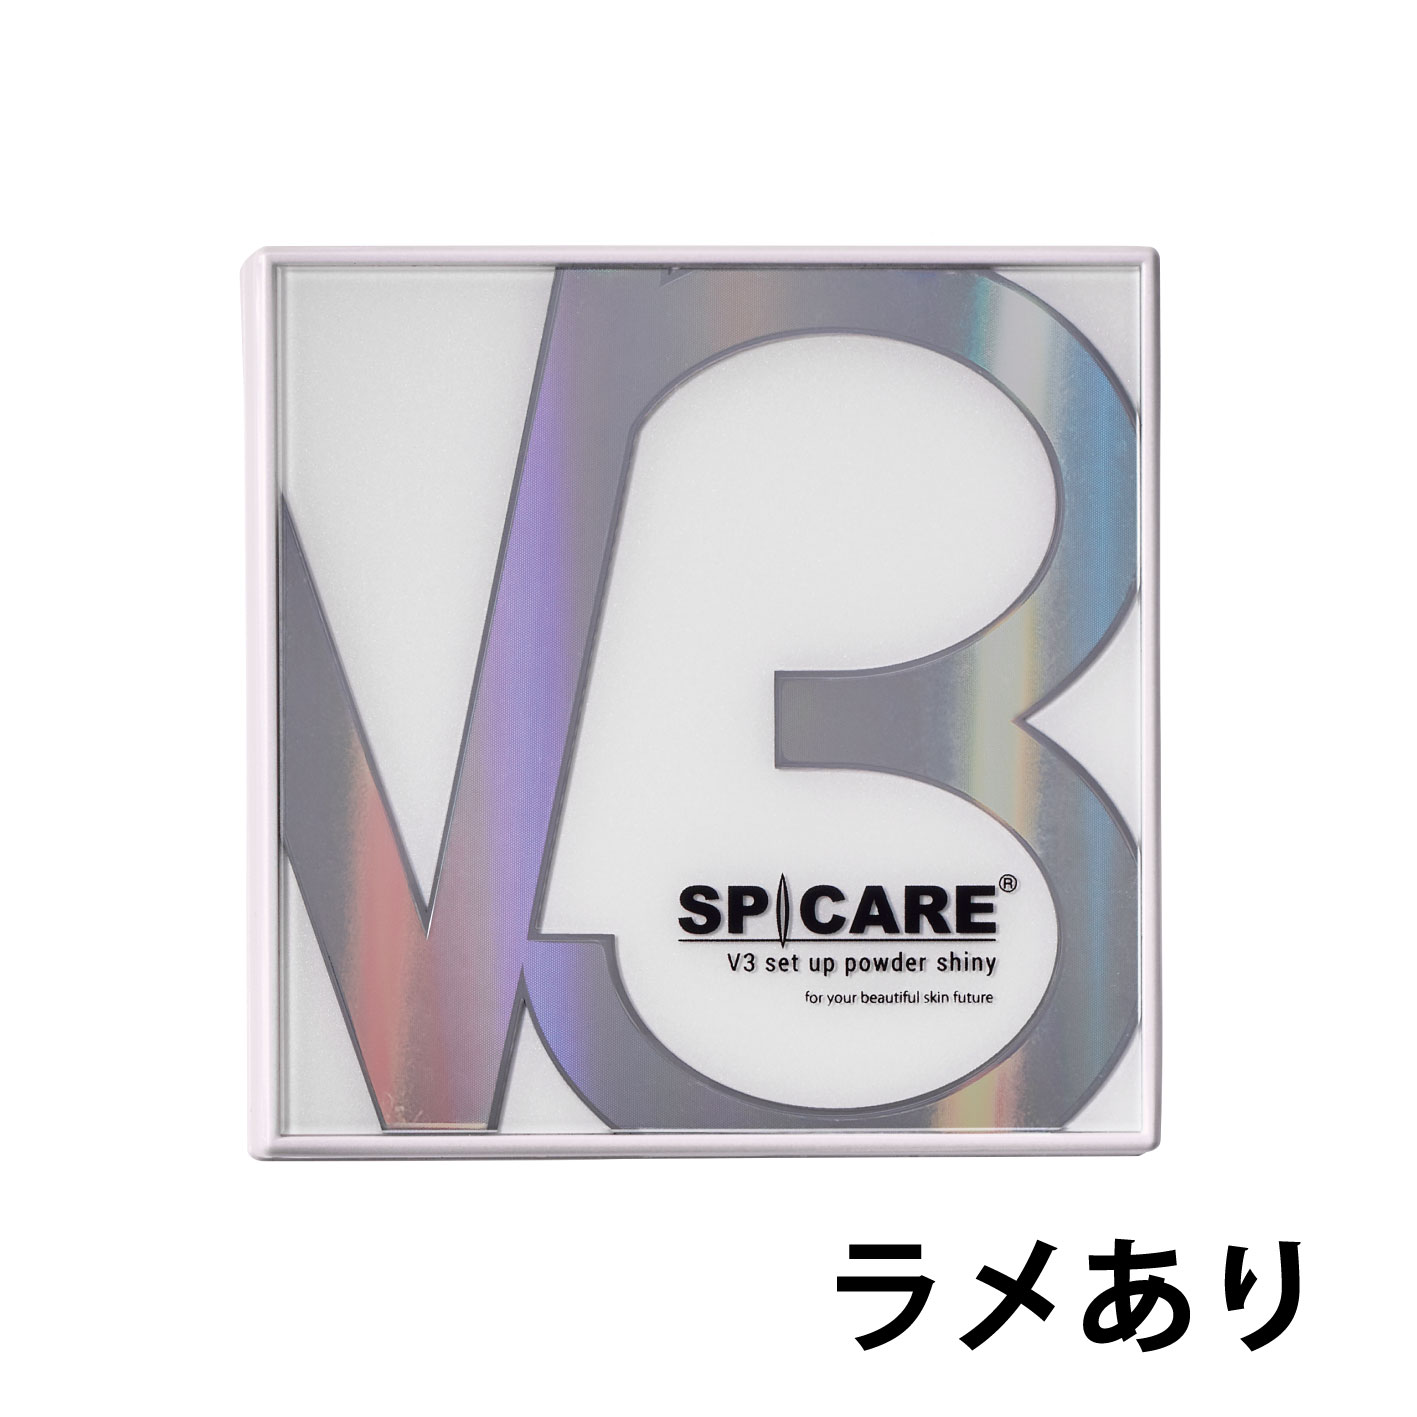 ◆V3 セットアップパウダー シャイニー【1個単位】